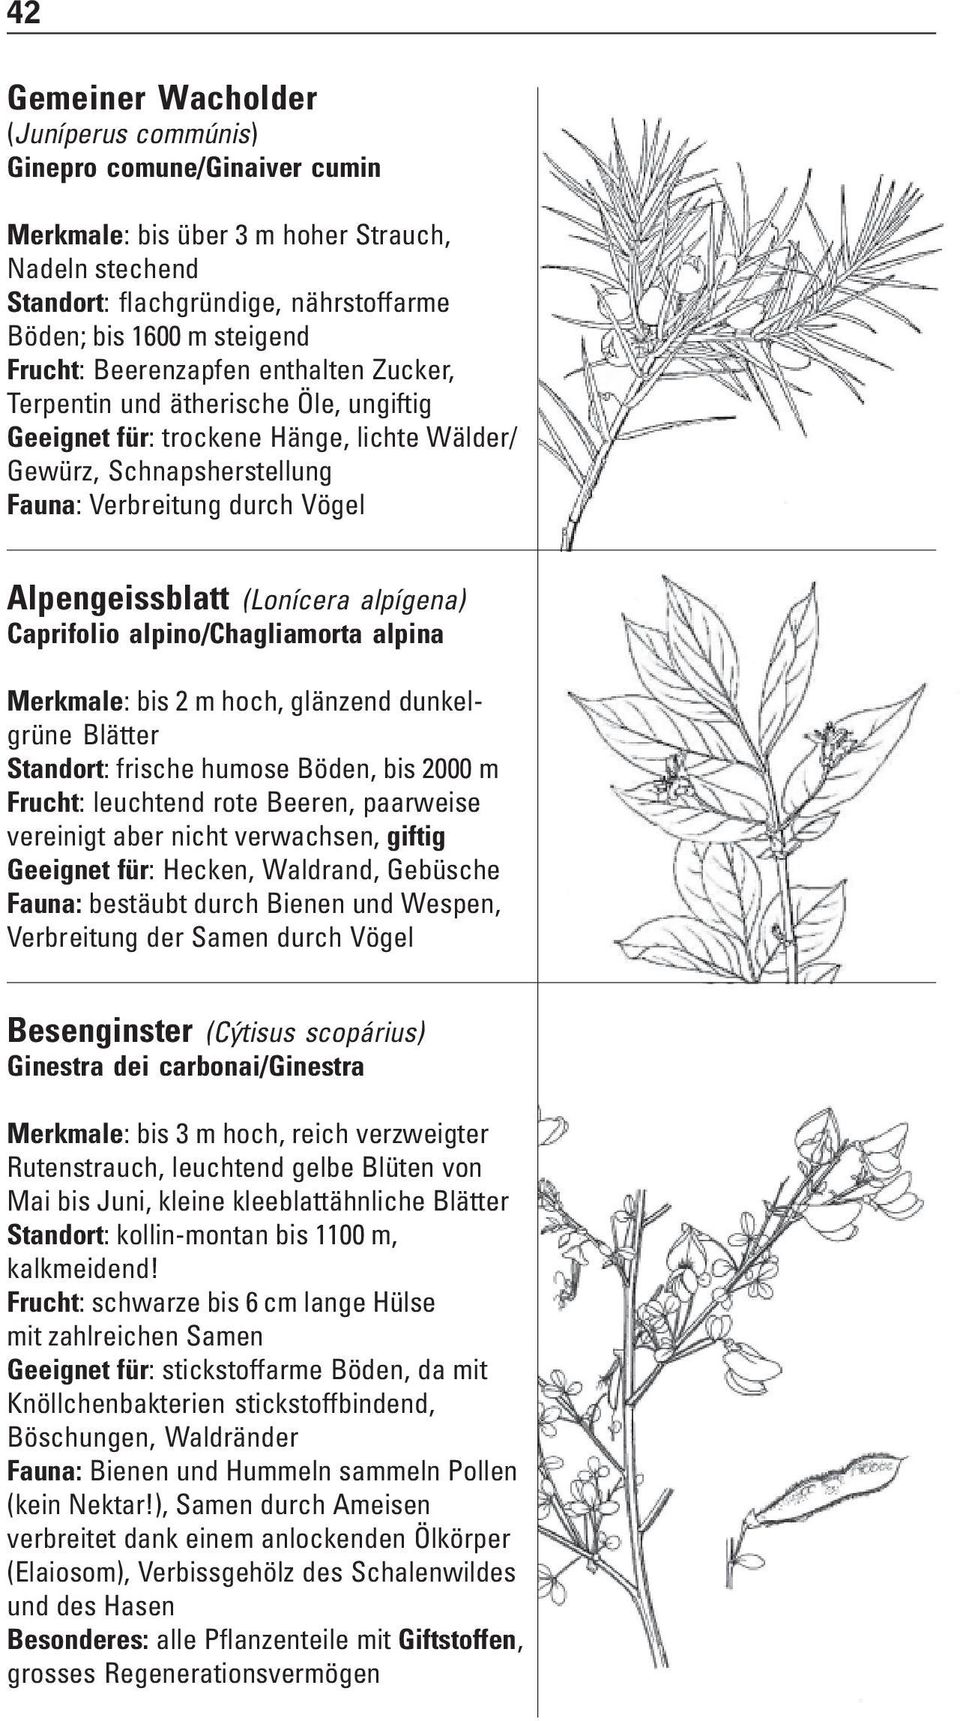 (Lonícera alpígena) Caprifolio alpino/chagliamorta alpina Merkmale: bis 2 m hoch, glänzend dunkelgrüne Blätter Standort: frische humose Böden, bis 2000 m Frucht: leuchtend rote Beeren, paarweise